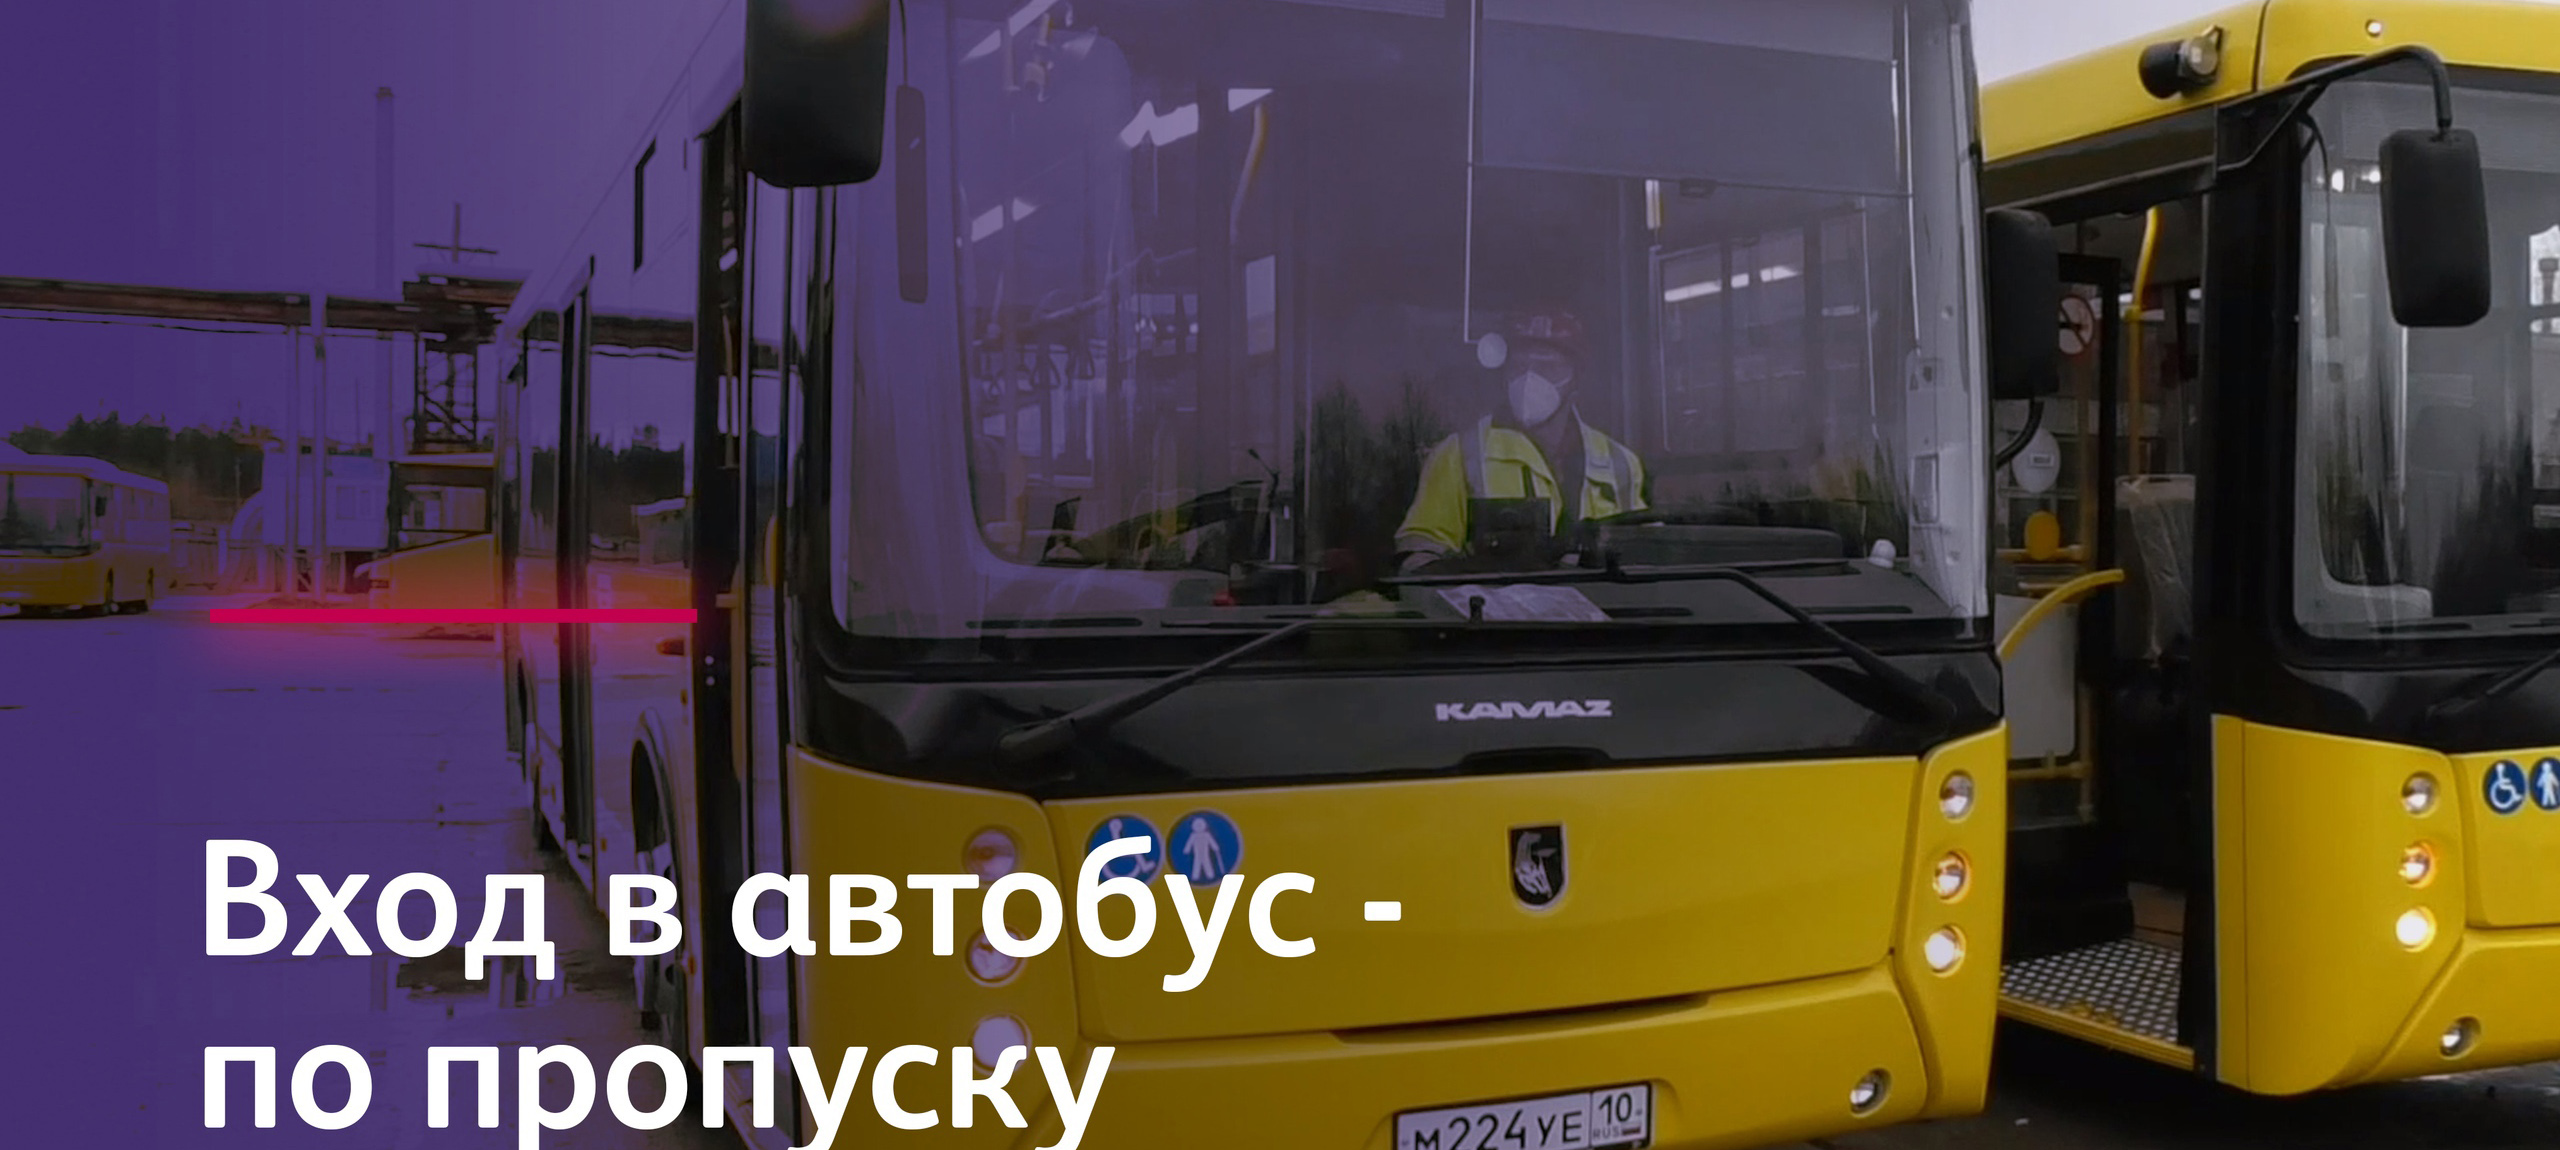 Автобусы с турникетами и охранниками вновь будут возить только сотрудников ГОКа в Карелии